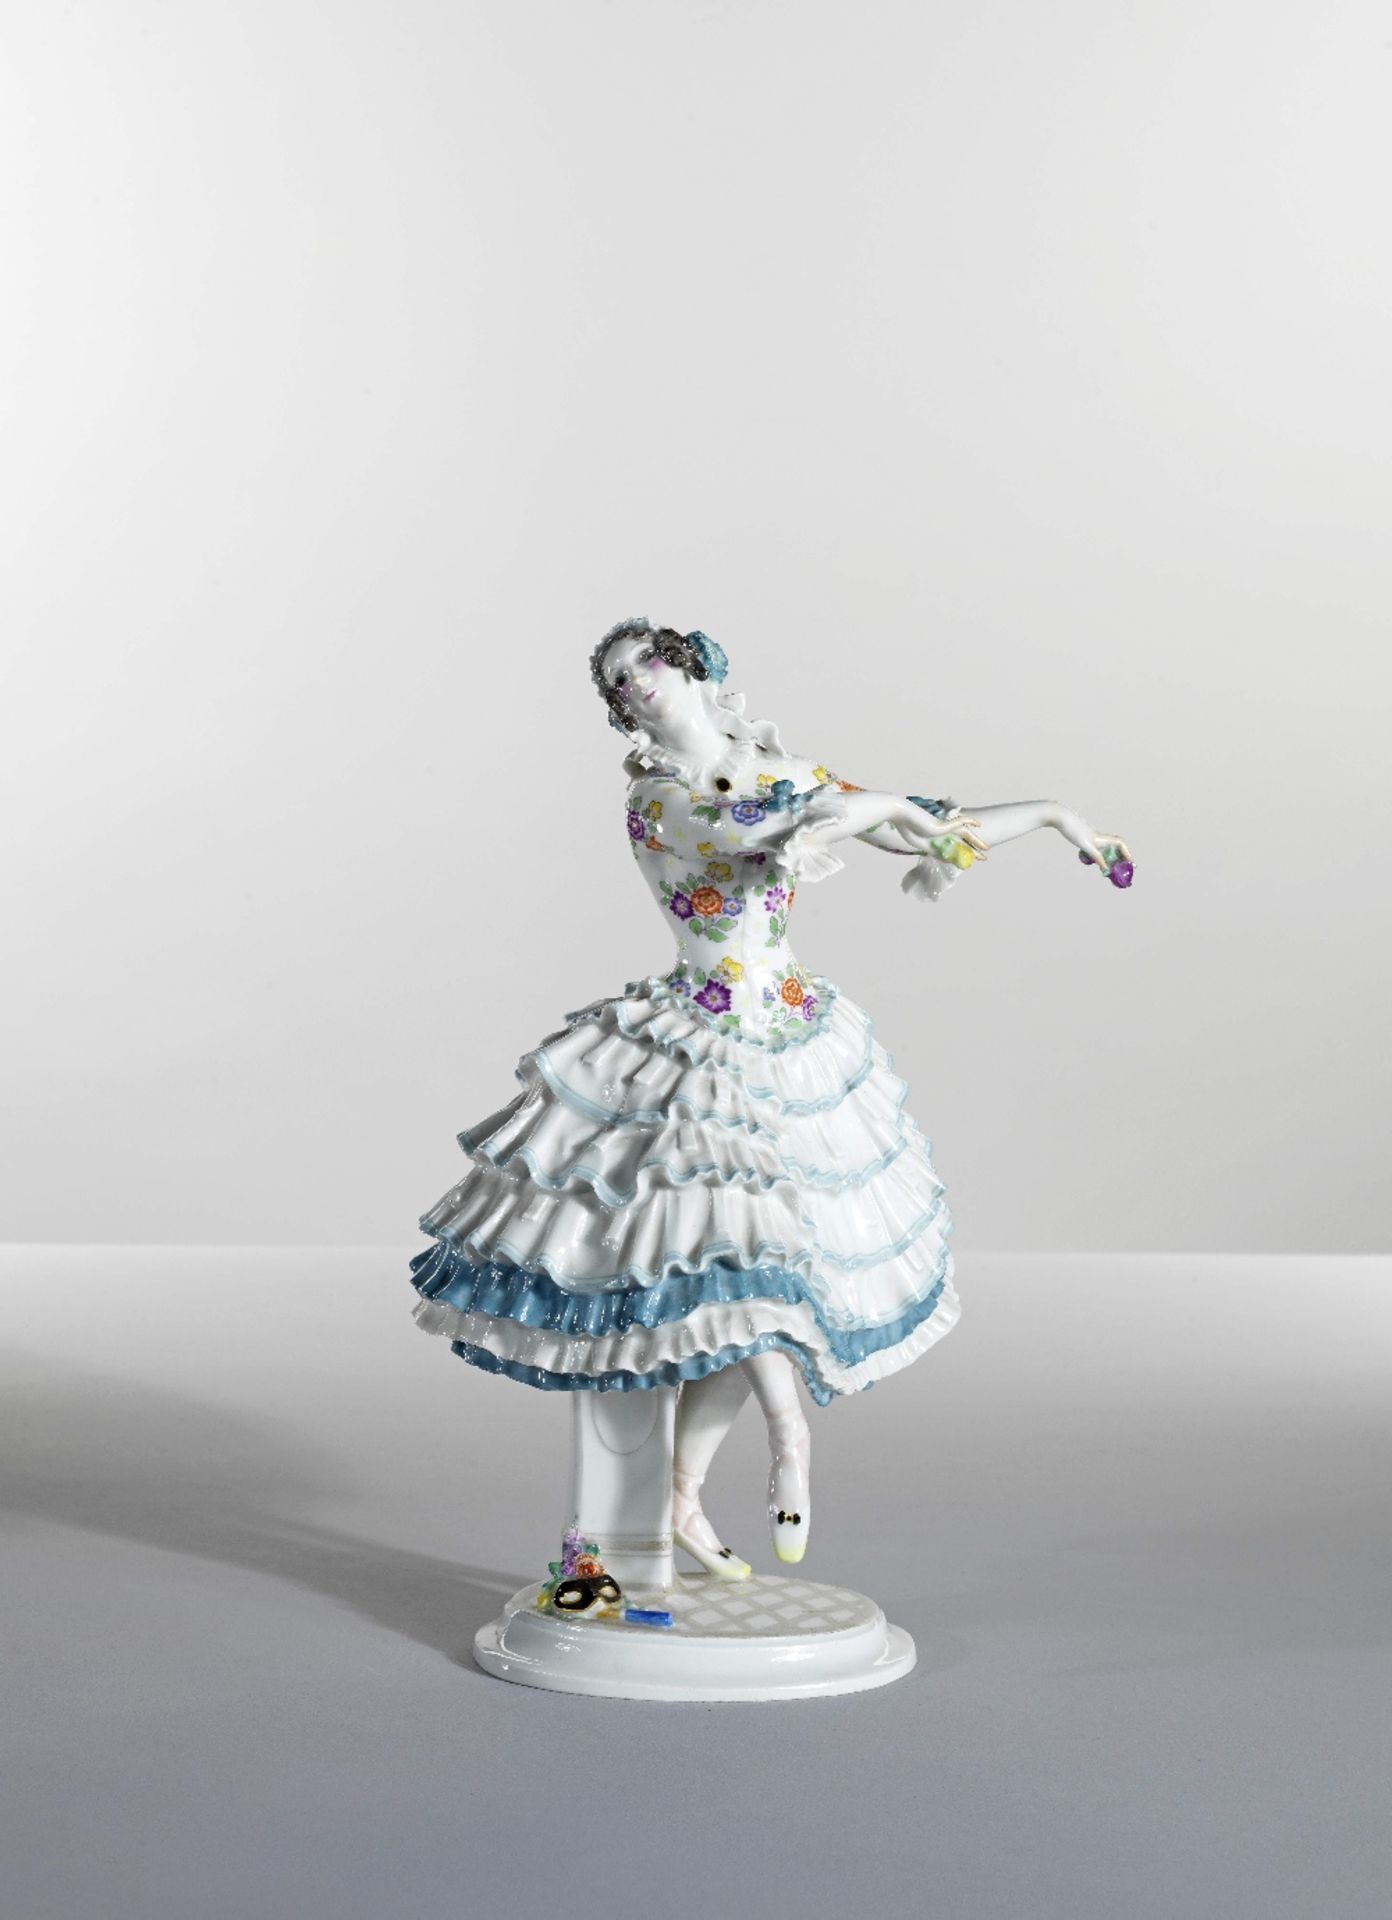 Suite de cinq personnages en porcelaine issus du ballet 'Le Carnaval' des Ballets Russes, circa 1... - Image 7 of 10